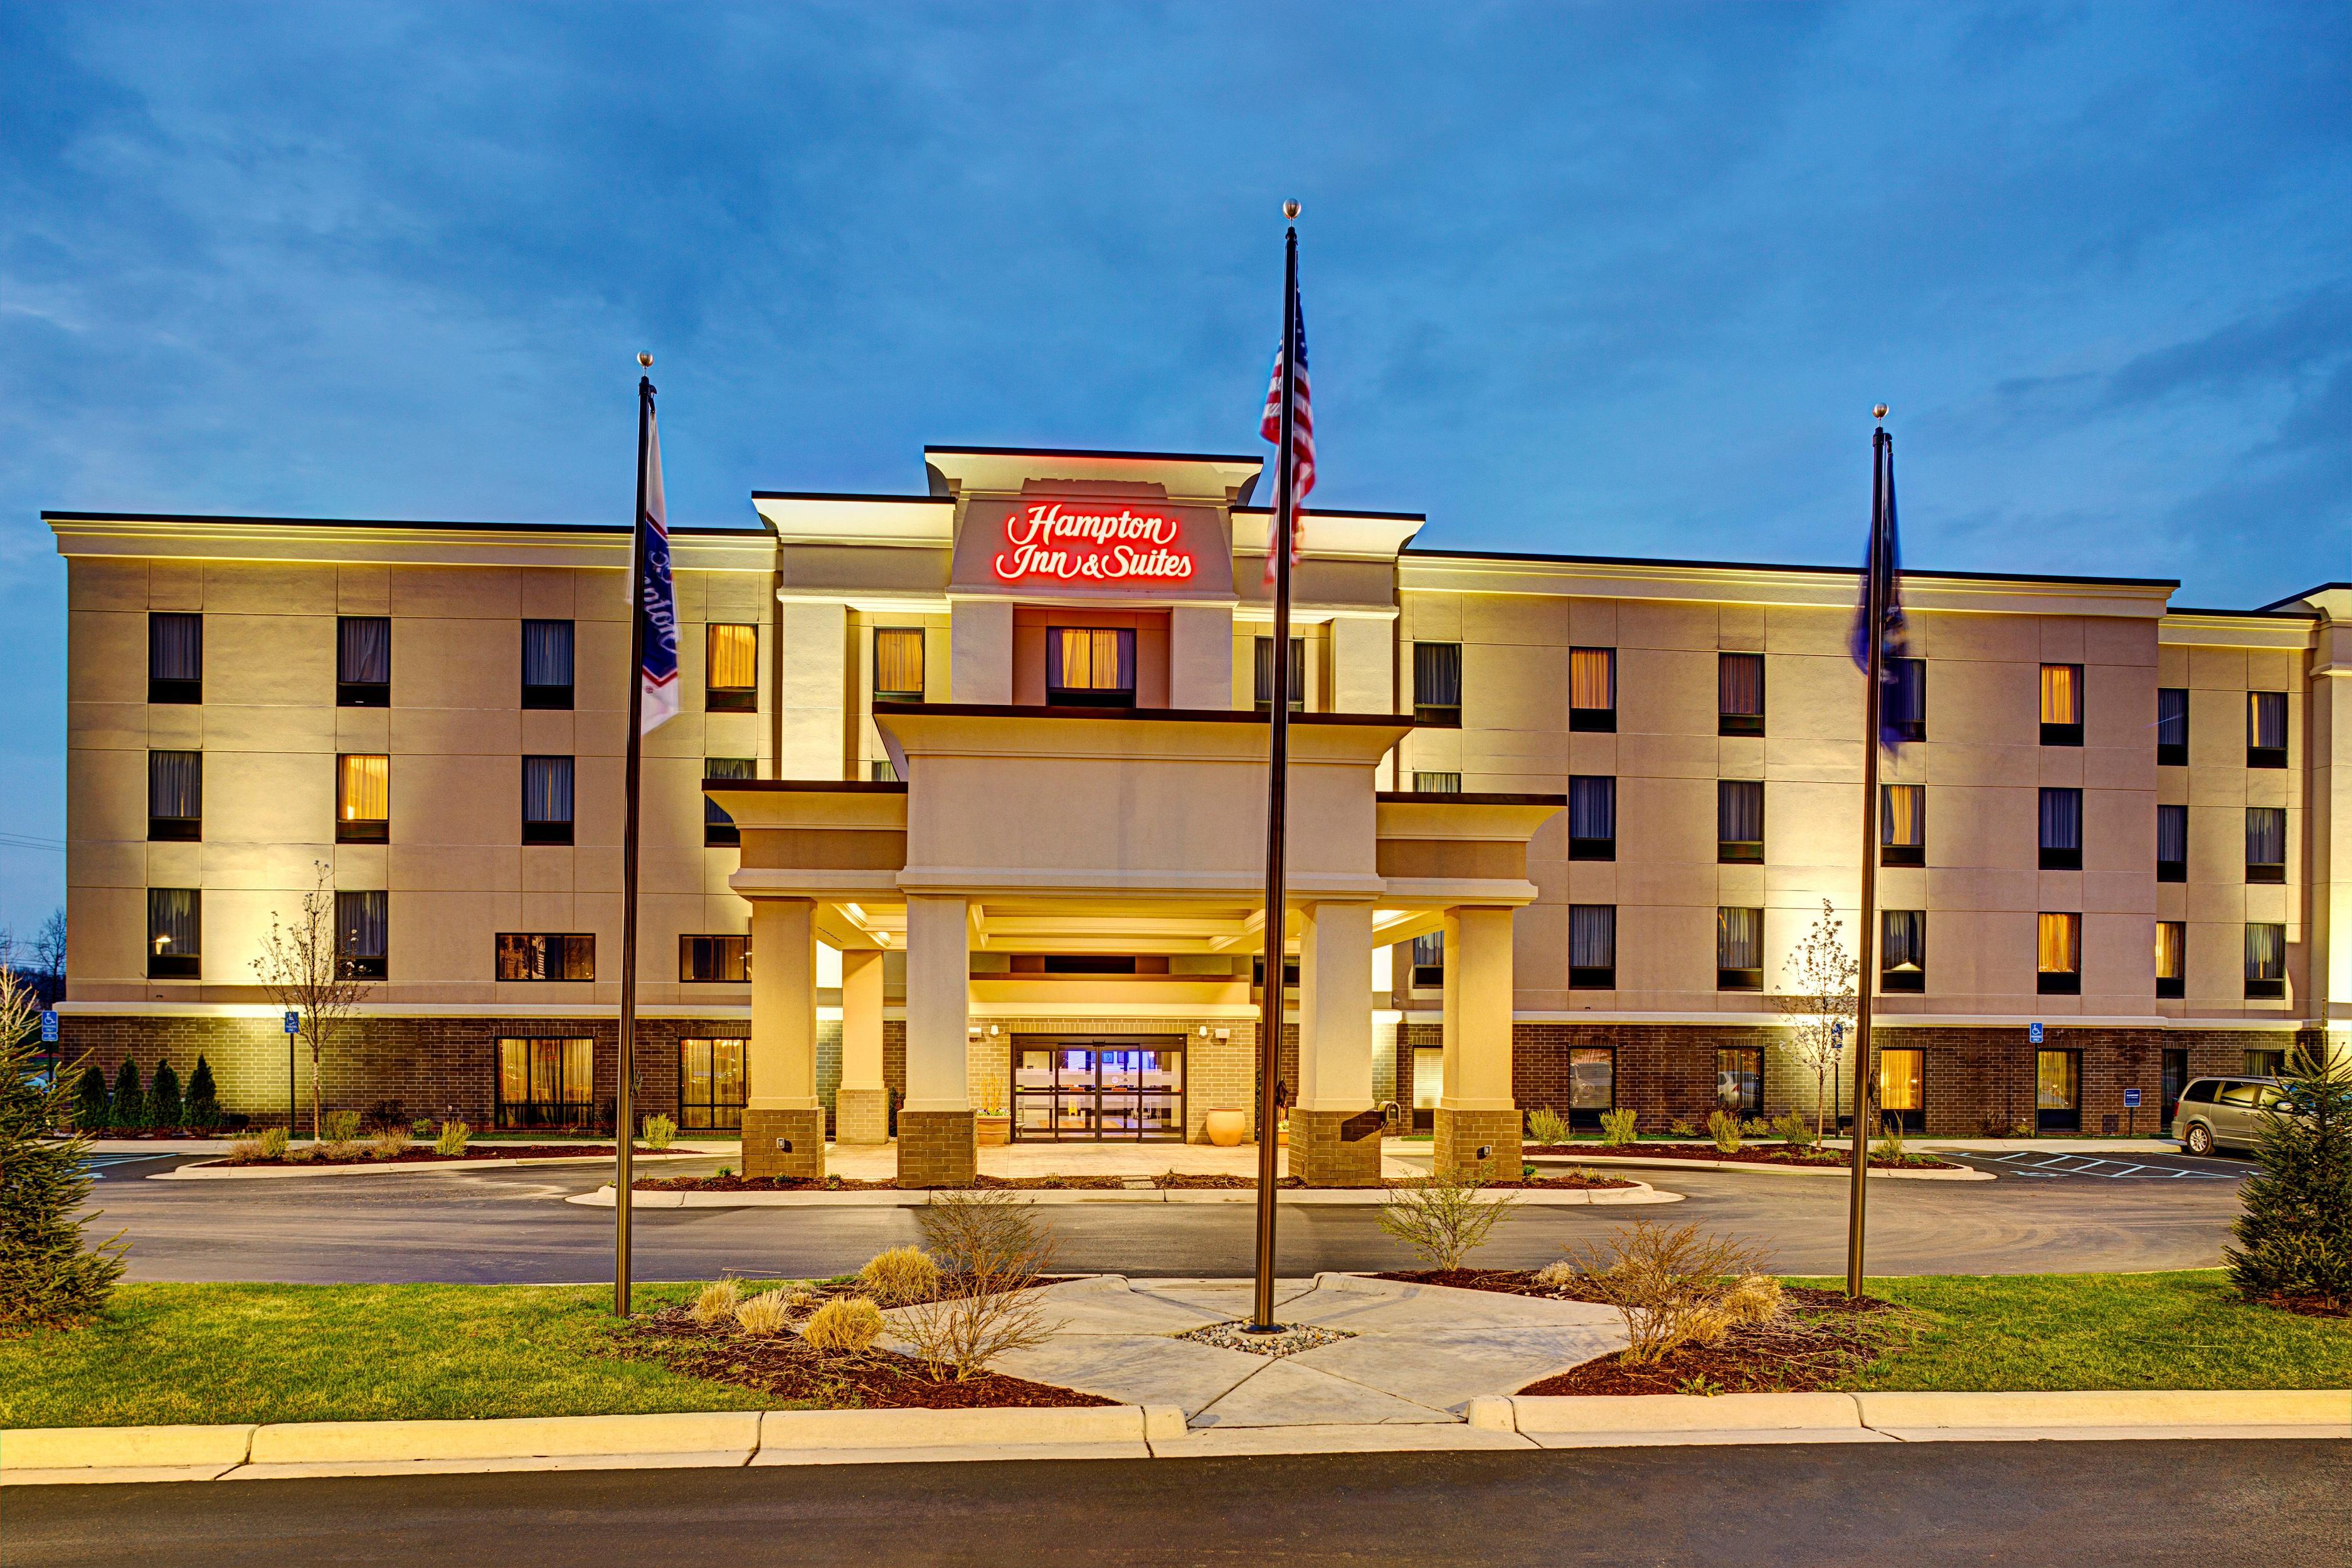 Photo of Hampton Inn & Suites Lansing West, Lansing, MI